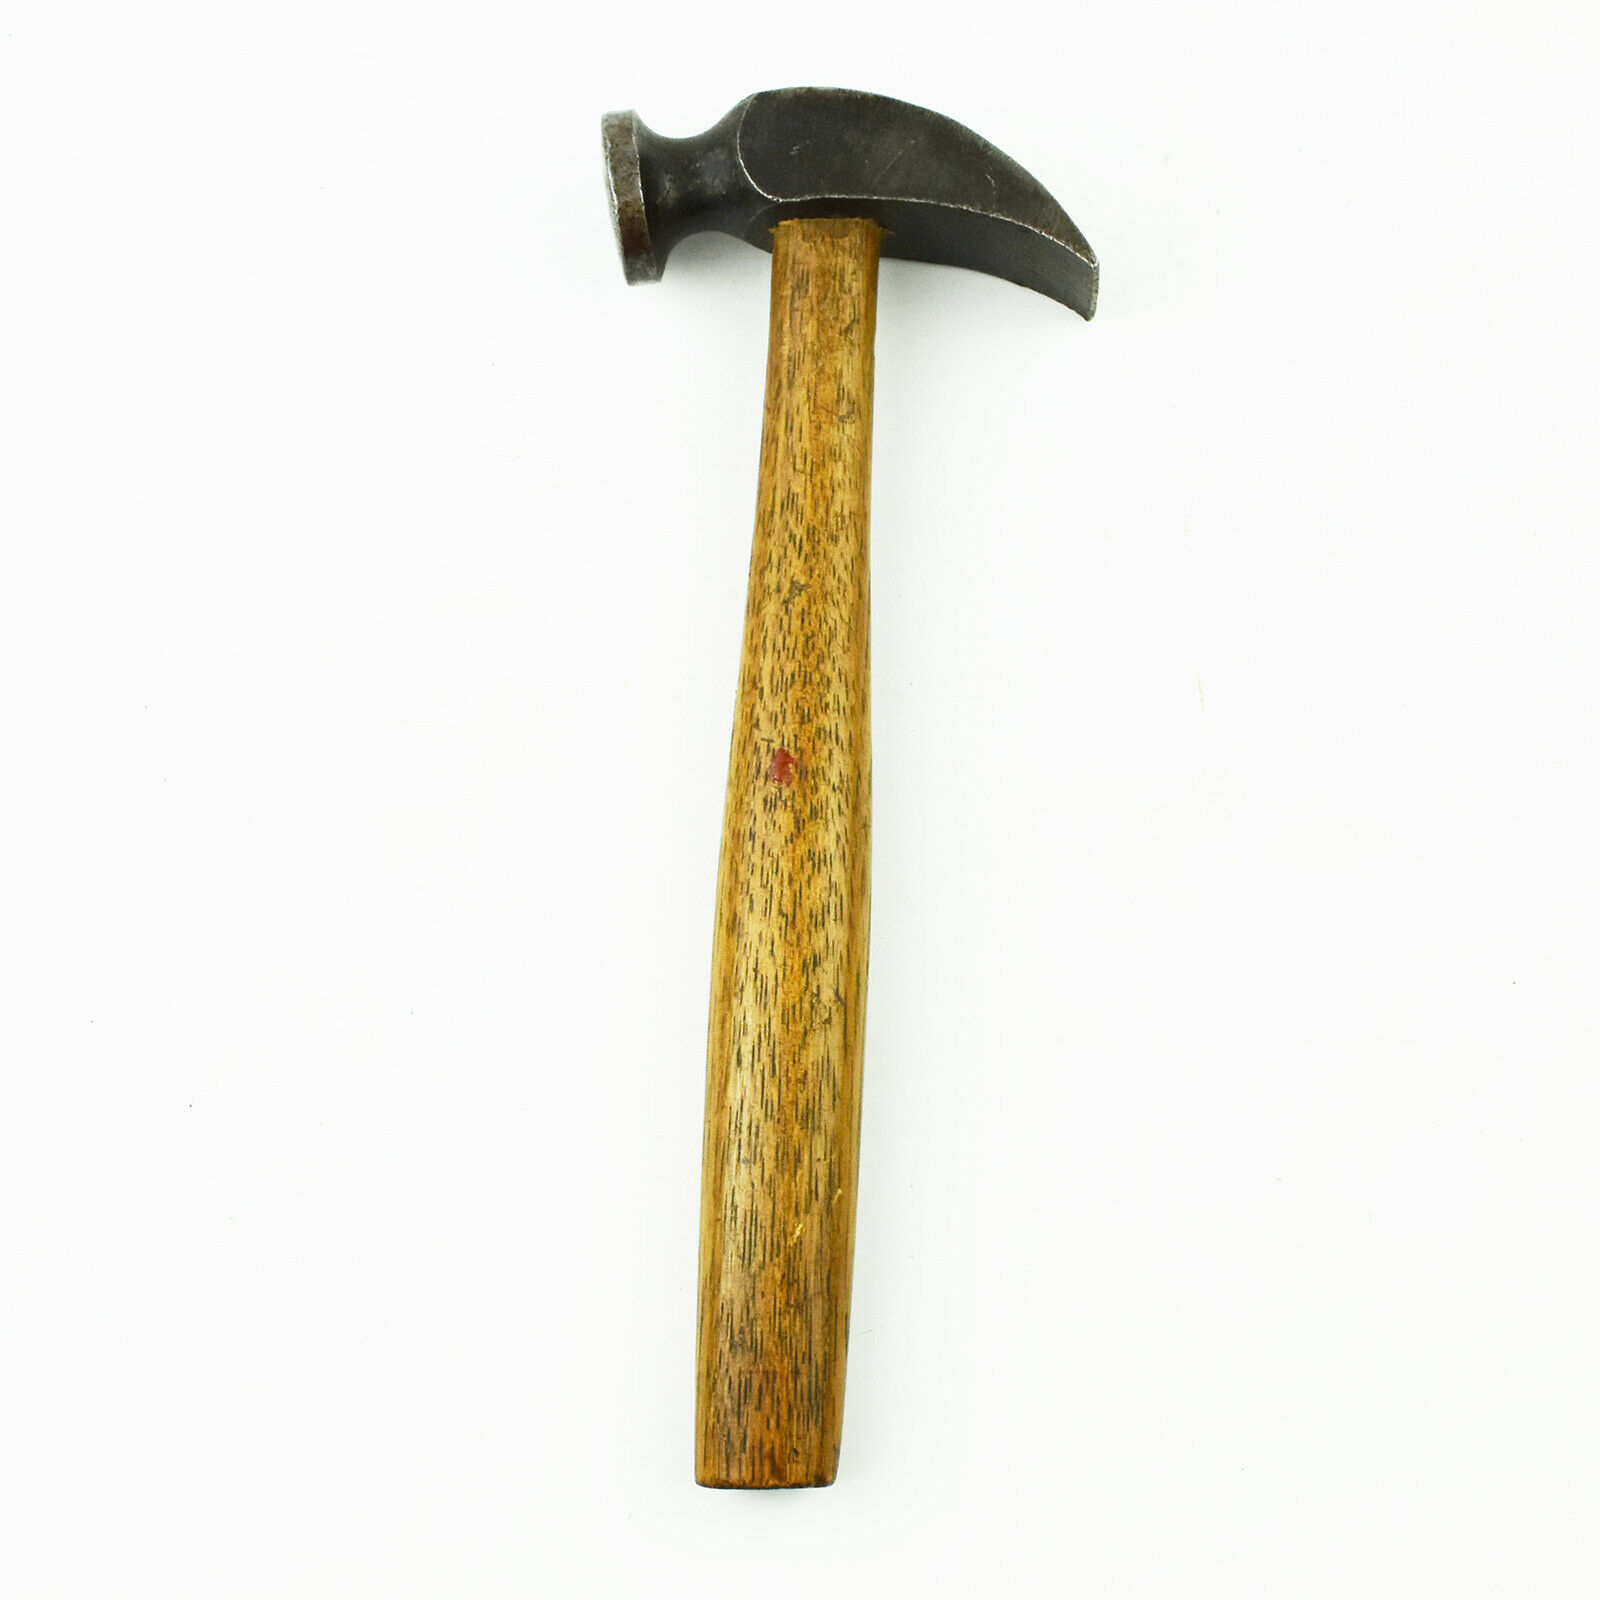 8 Oz. Cobbler's Hammer Vintage